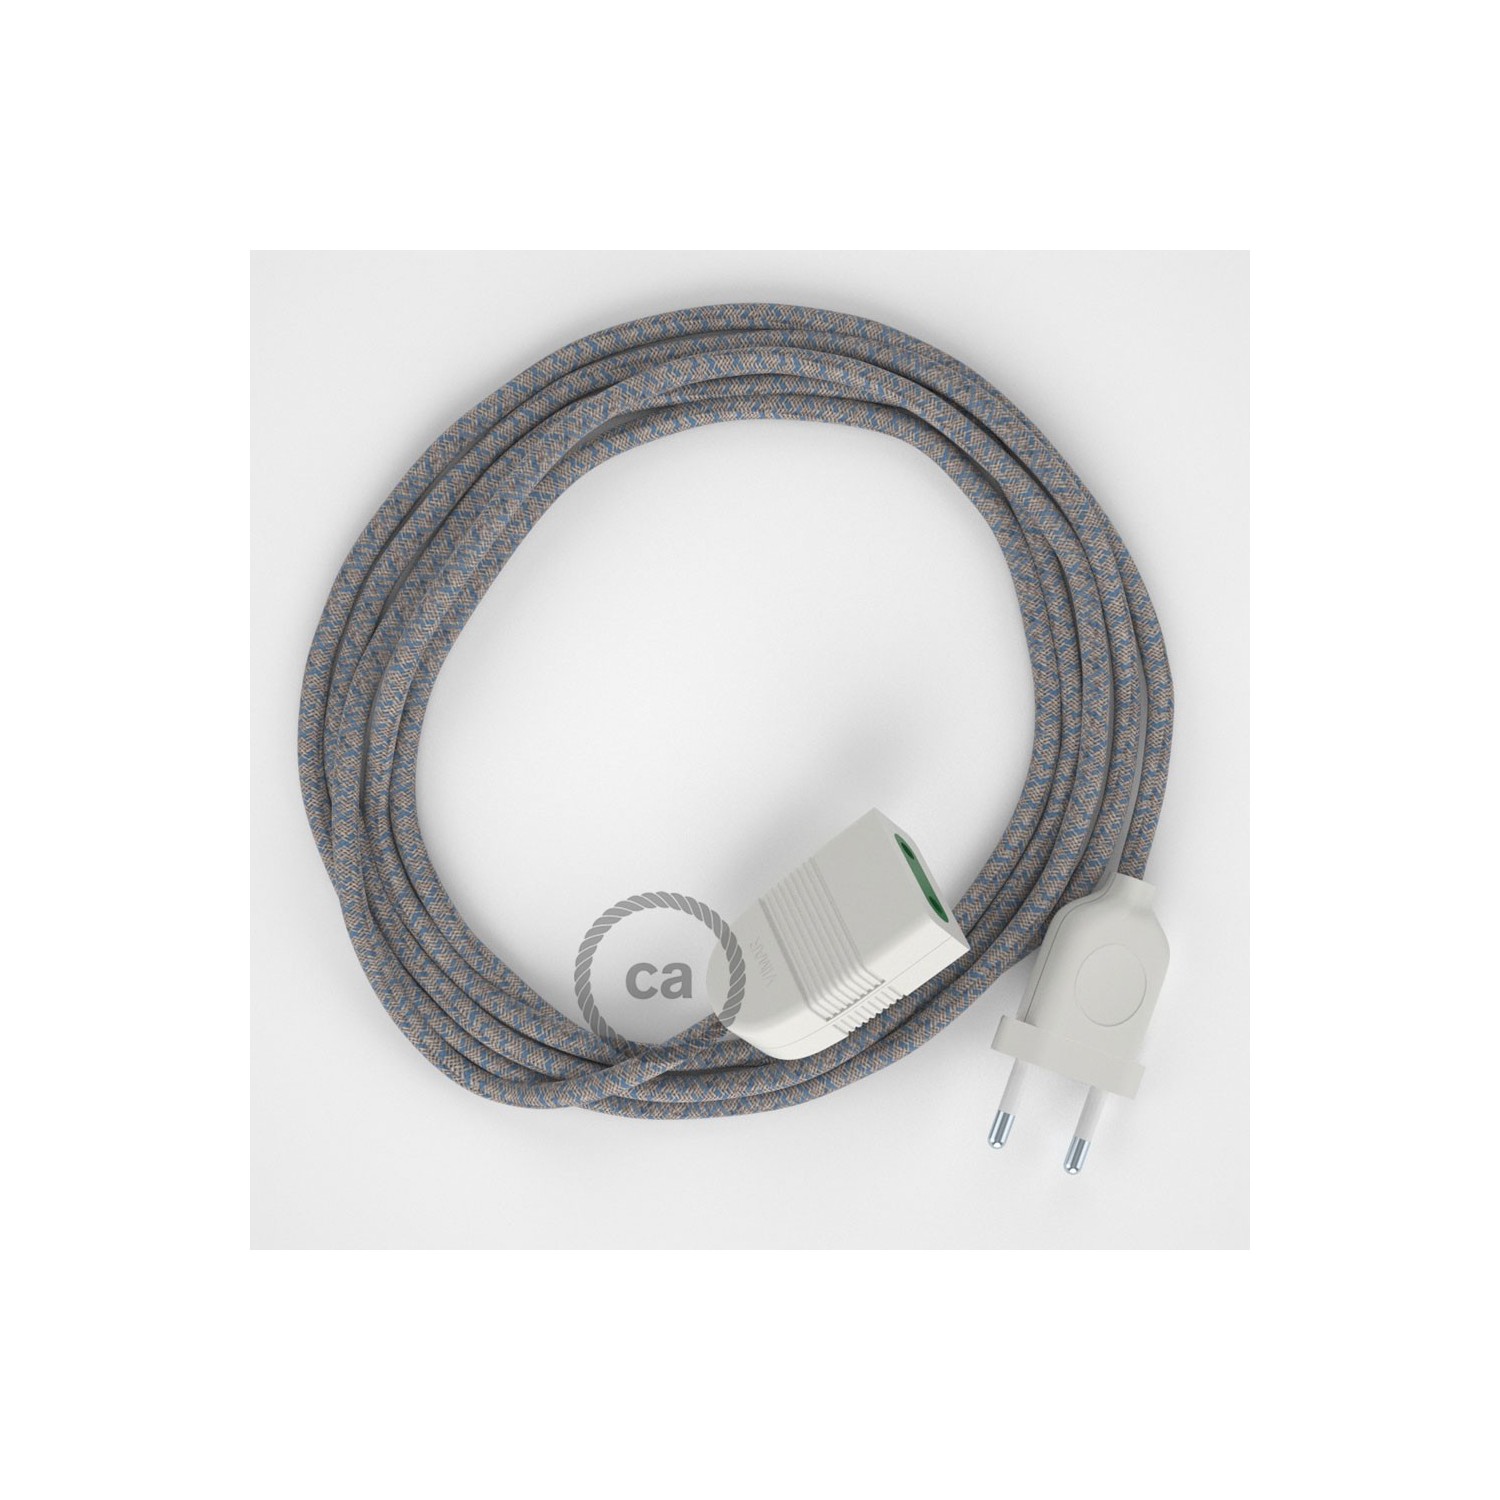 Rallonge électrique avec câble textile RD65 Coton et Lin Naturel Losange Bleu Steward 2P 10A Made in Italy.